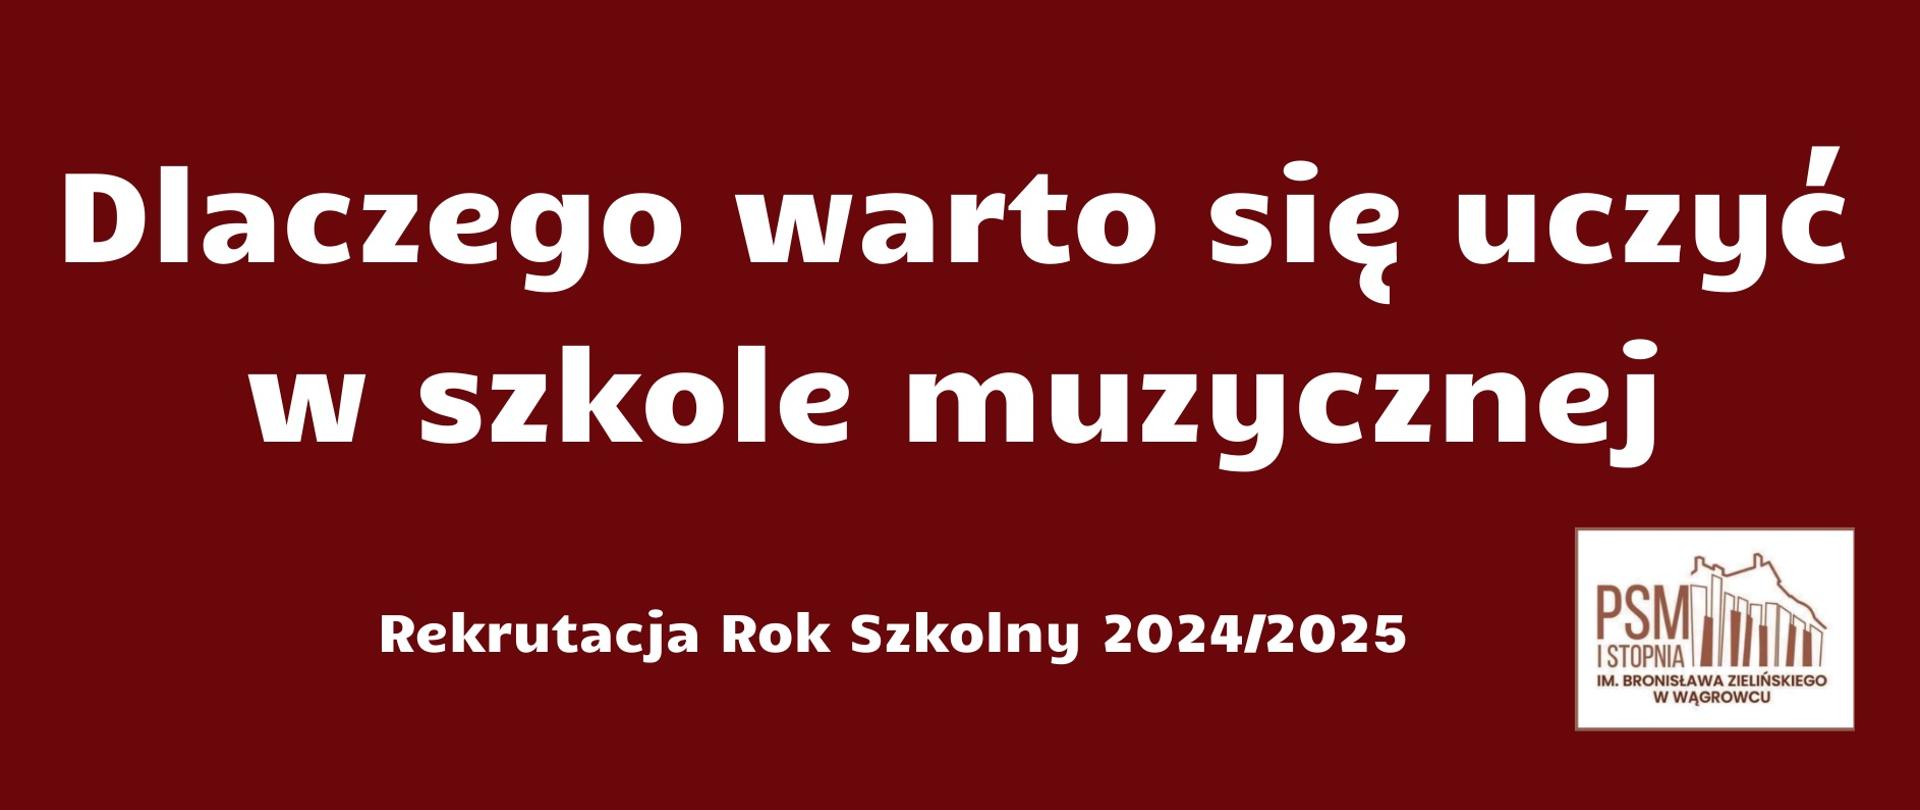 Na banerze reklamowym w kolorze bordowym zawarta jest informacja - dlaczego warto uczyć się w szkole muzycznej oraz logo Państwowej Szkoły Muzycznej w Wągrowcu